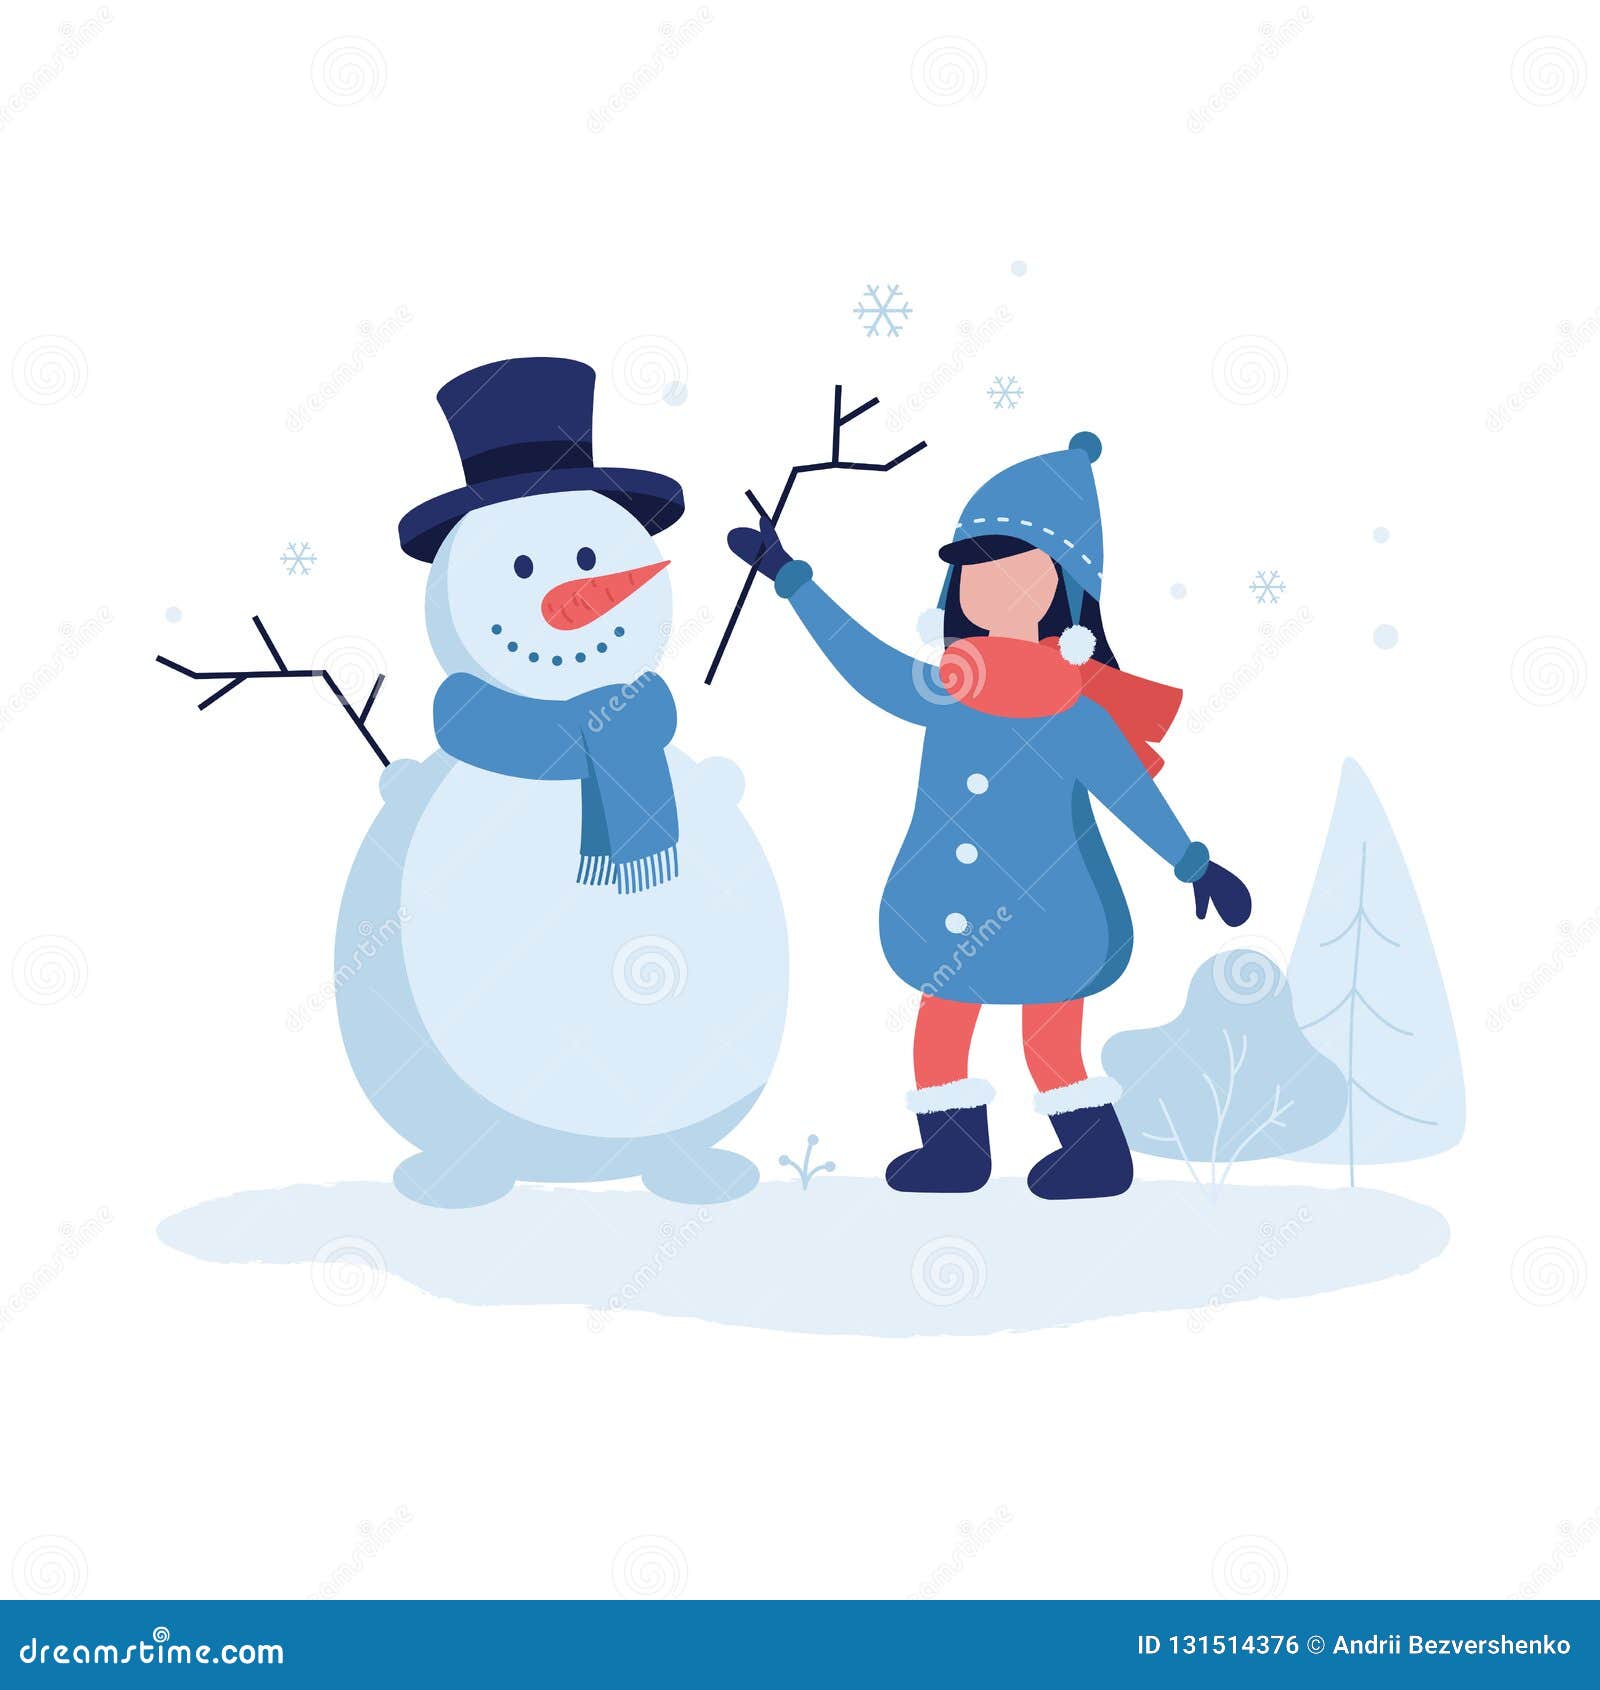 Cùng tận hưởng không khí mùa đông với bức ảnh chú người tuyết dễ thương đặt lên nền tuyết trắng tinh khôi, tạo nên một khung cảnh ấm áp, ngọt ngào và lãng mạn.